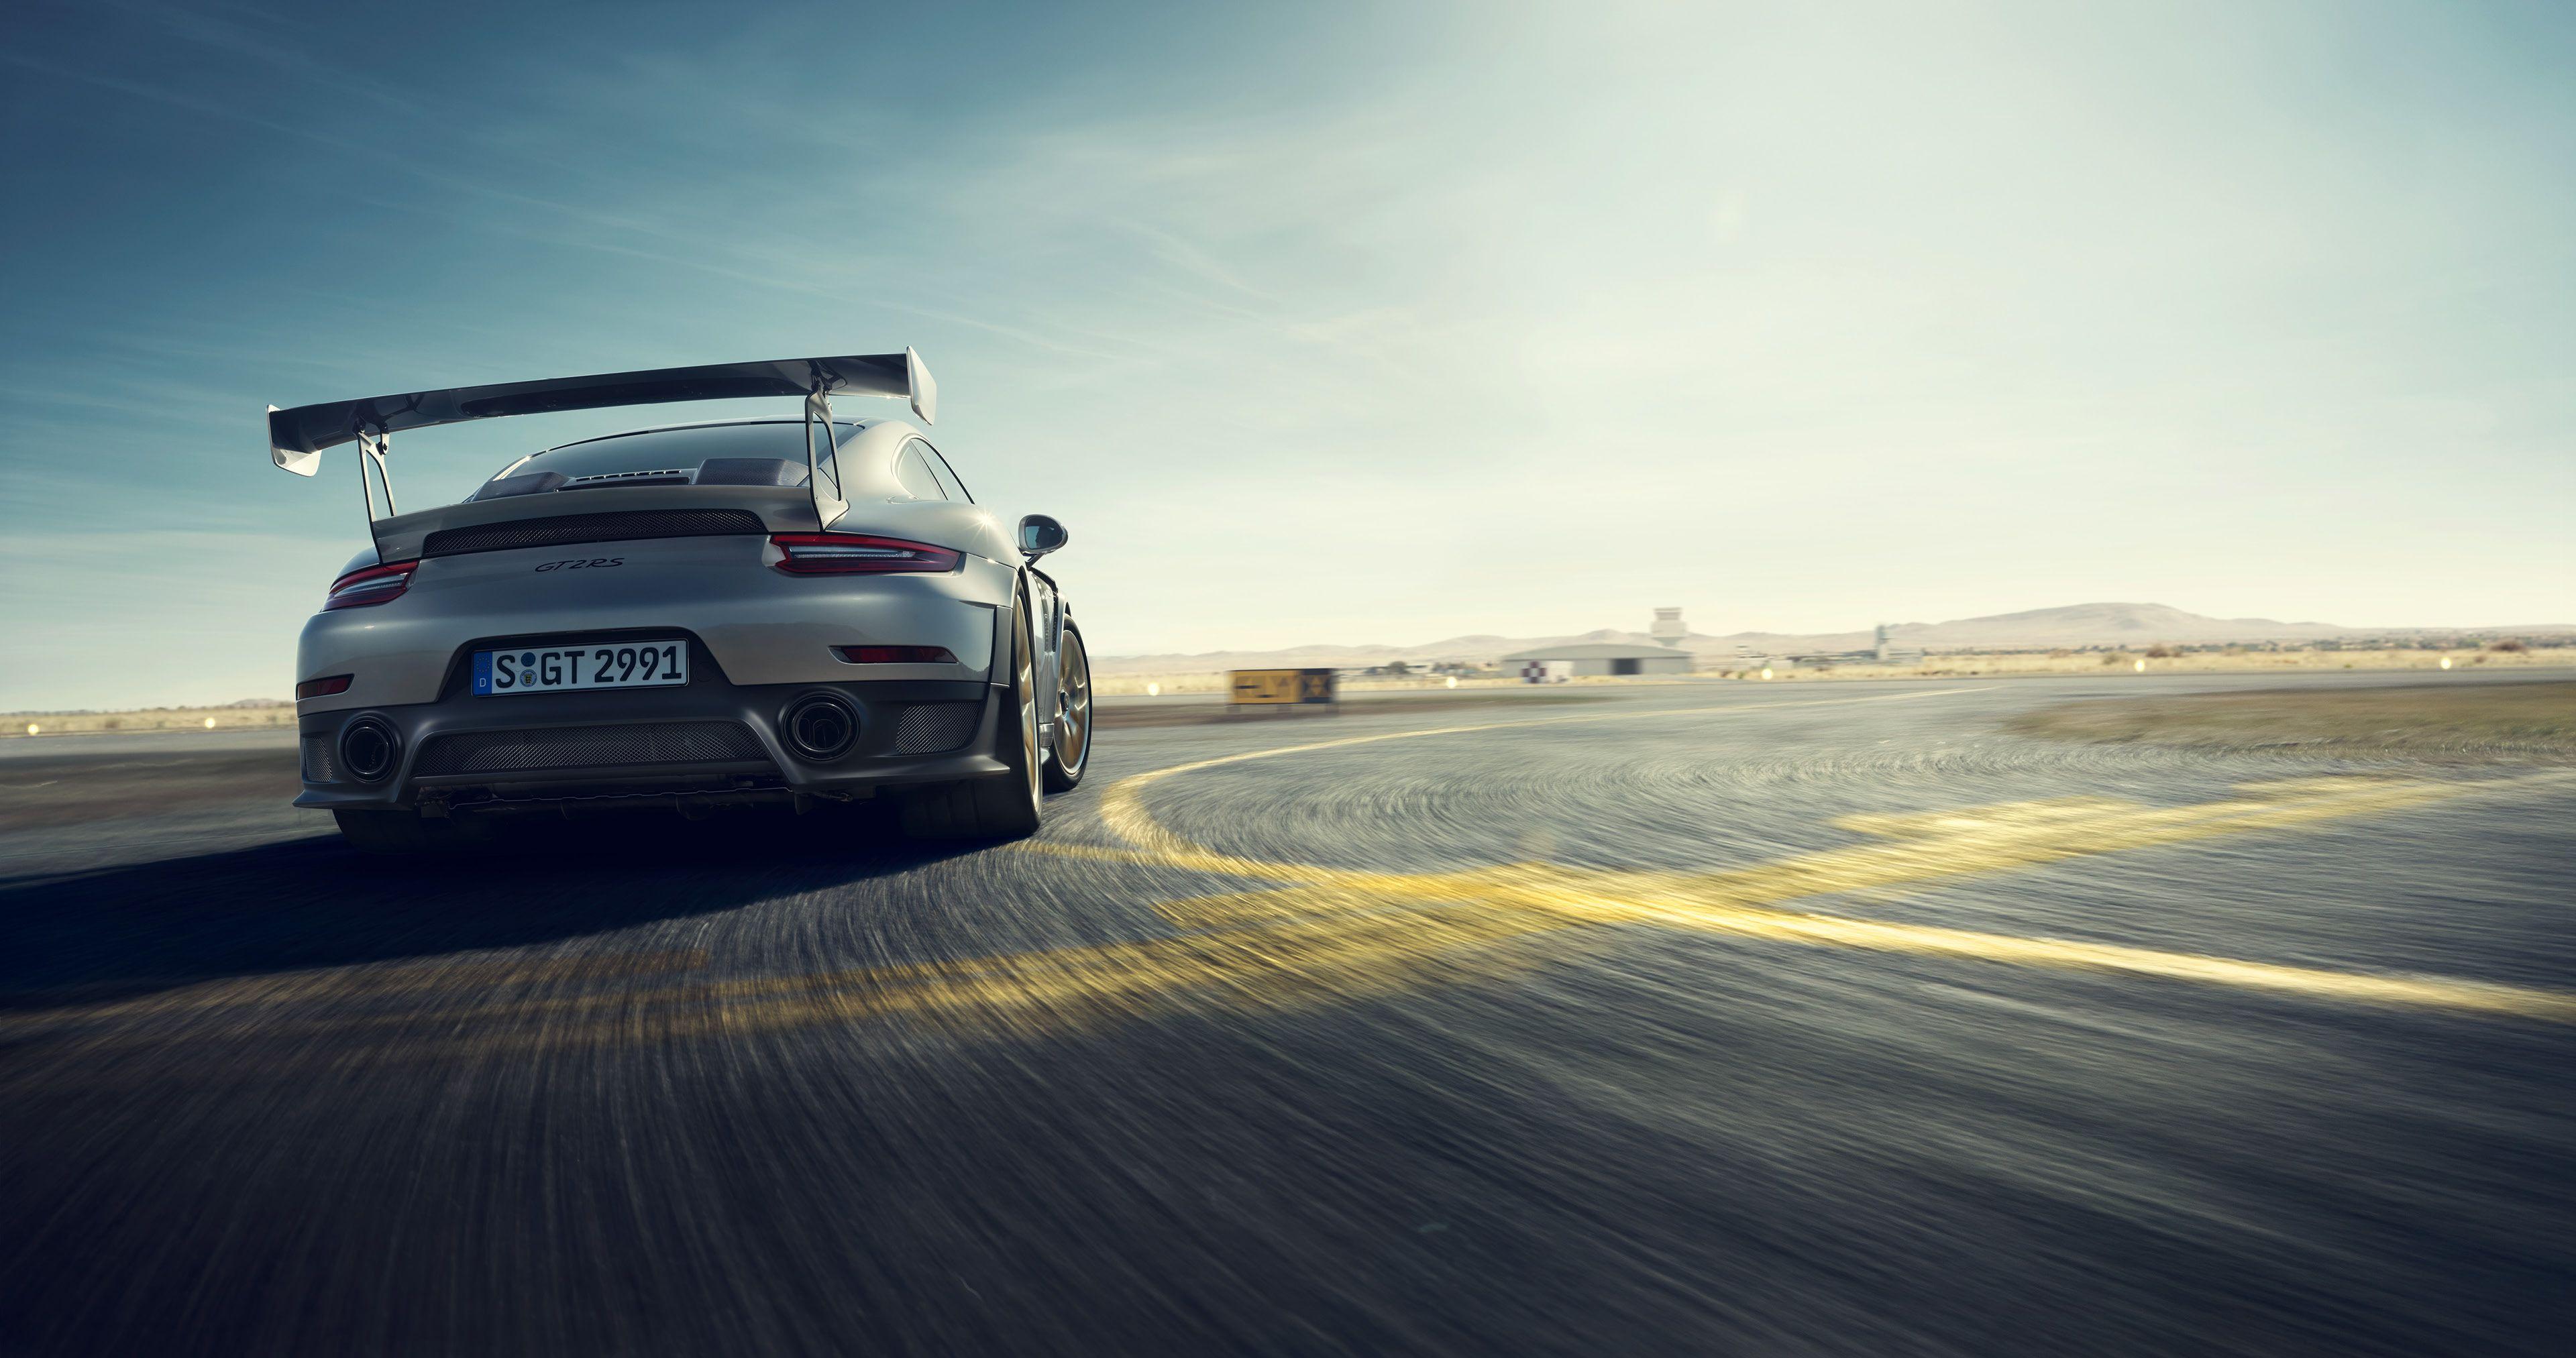 Porsche 911 GT2 RS 4k HD Cars, 4k Wallpaper, Image